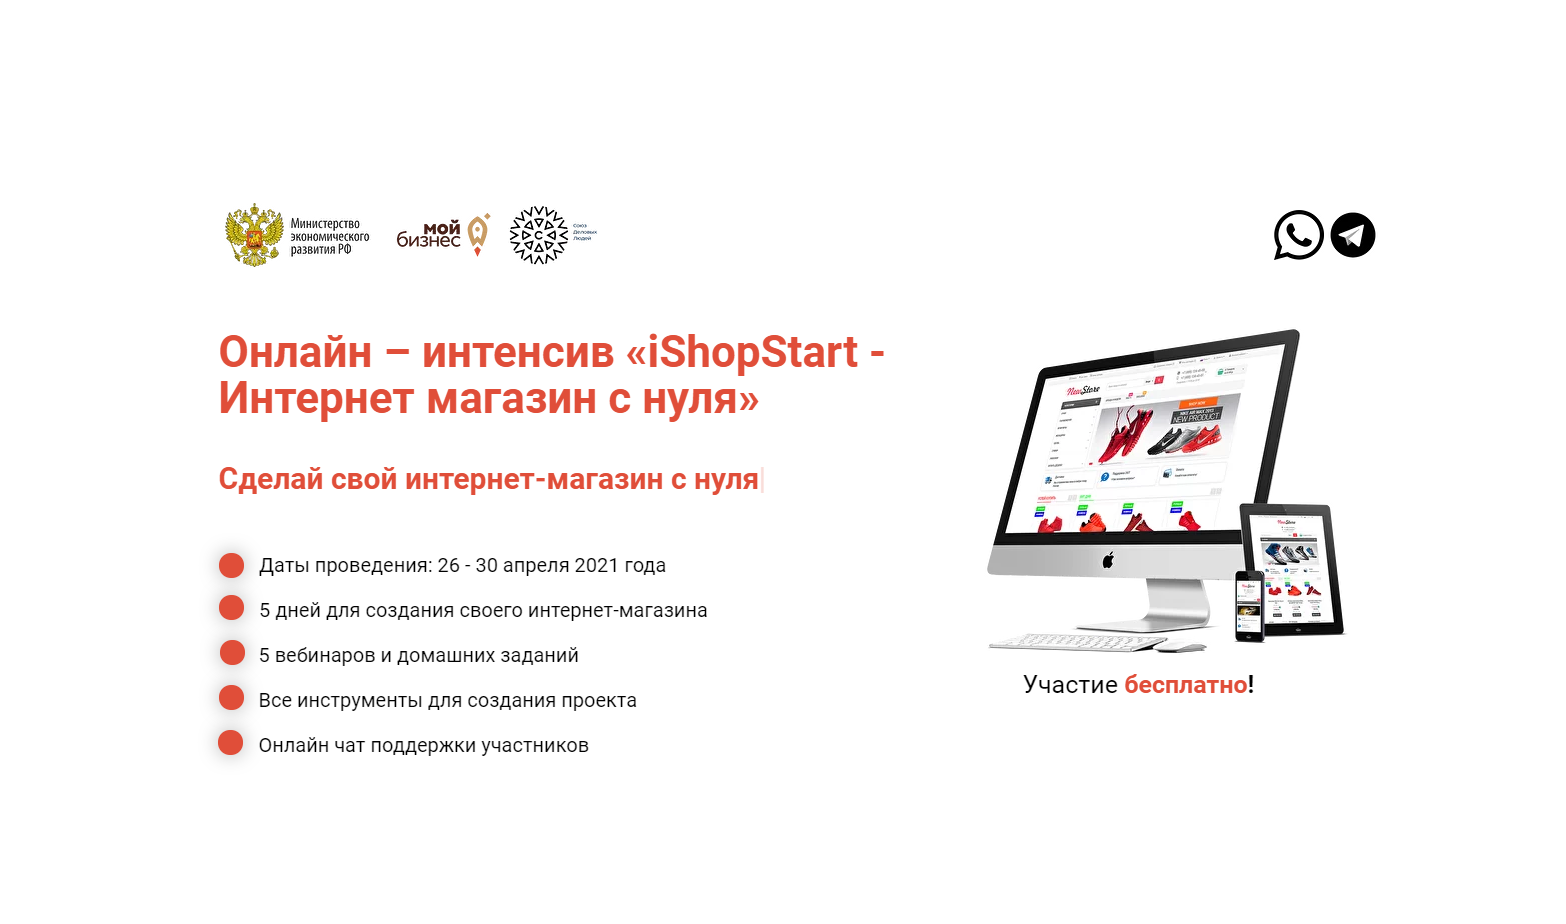 Онлайн-интенсив «iShopStart – Создание интернет-магазина с нуля» стартует 26 апреля